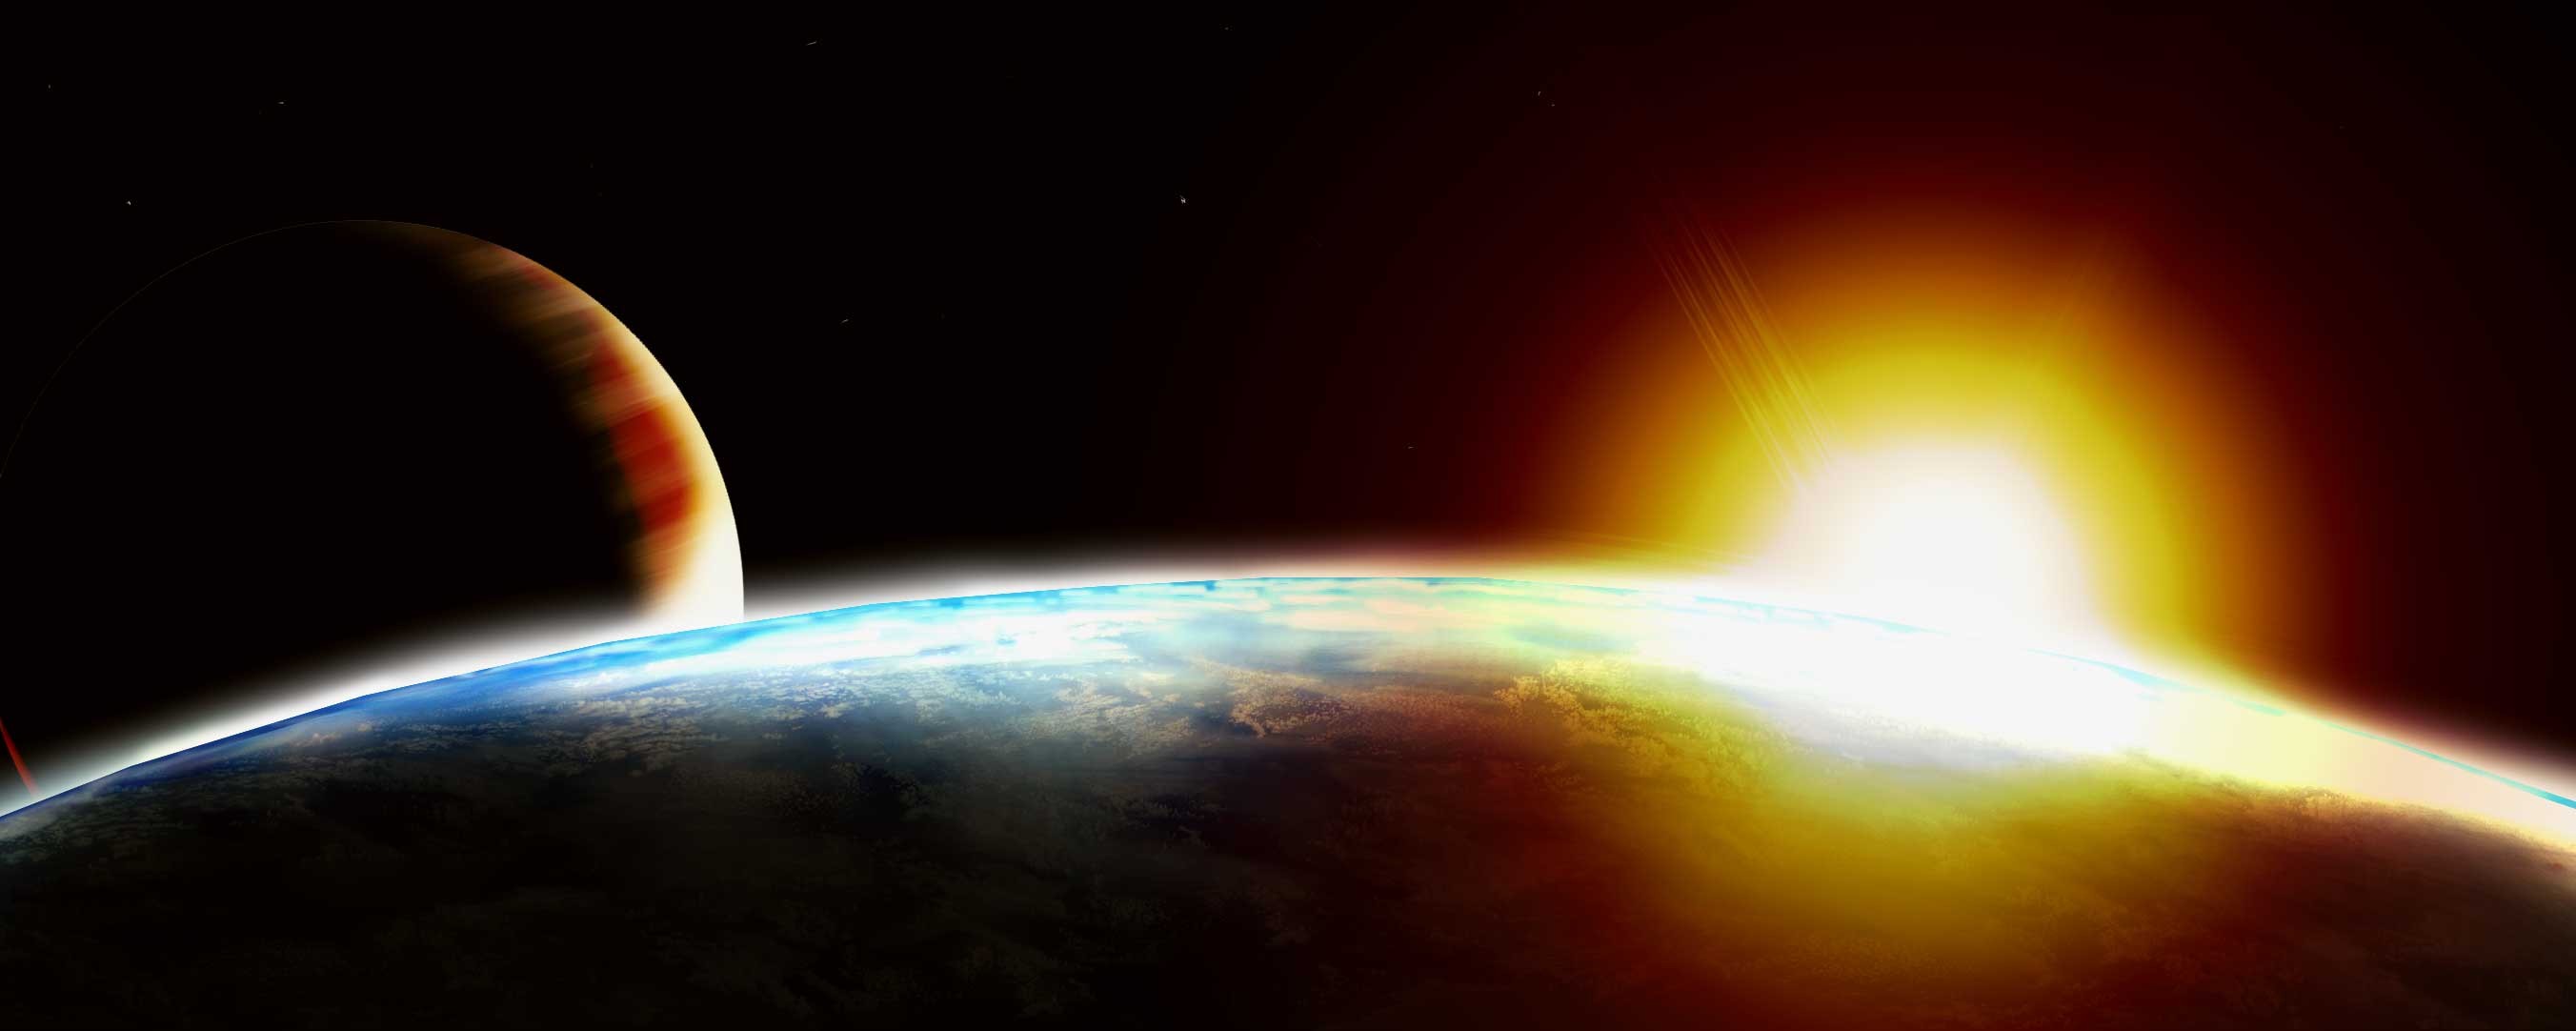 fondo de pantalla de sol y luna,atmósfera,espacio exterior,planeta,objeto astronómico,universo